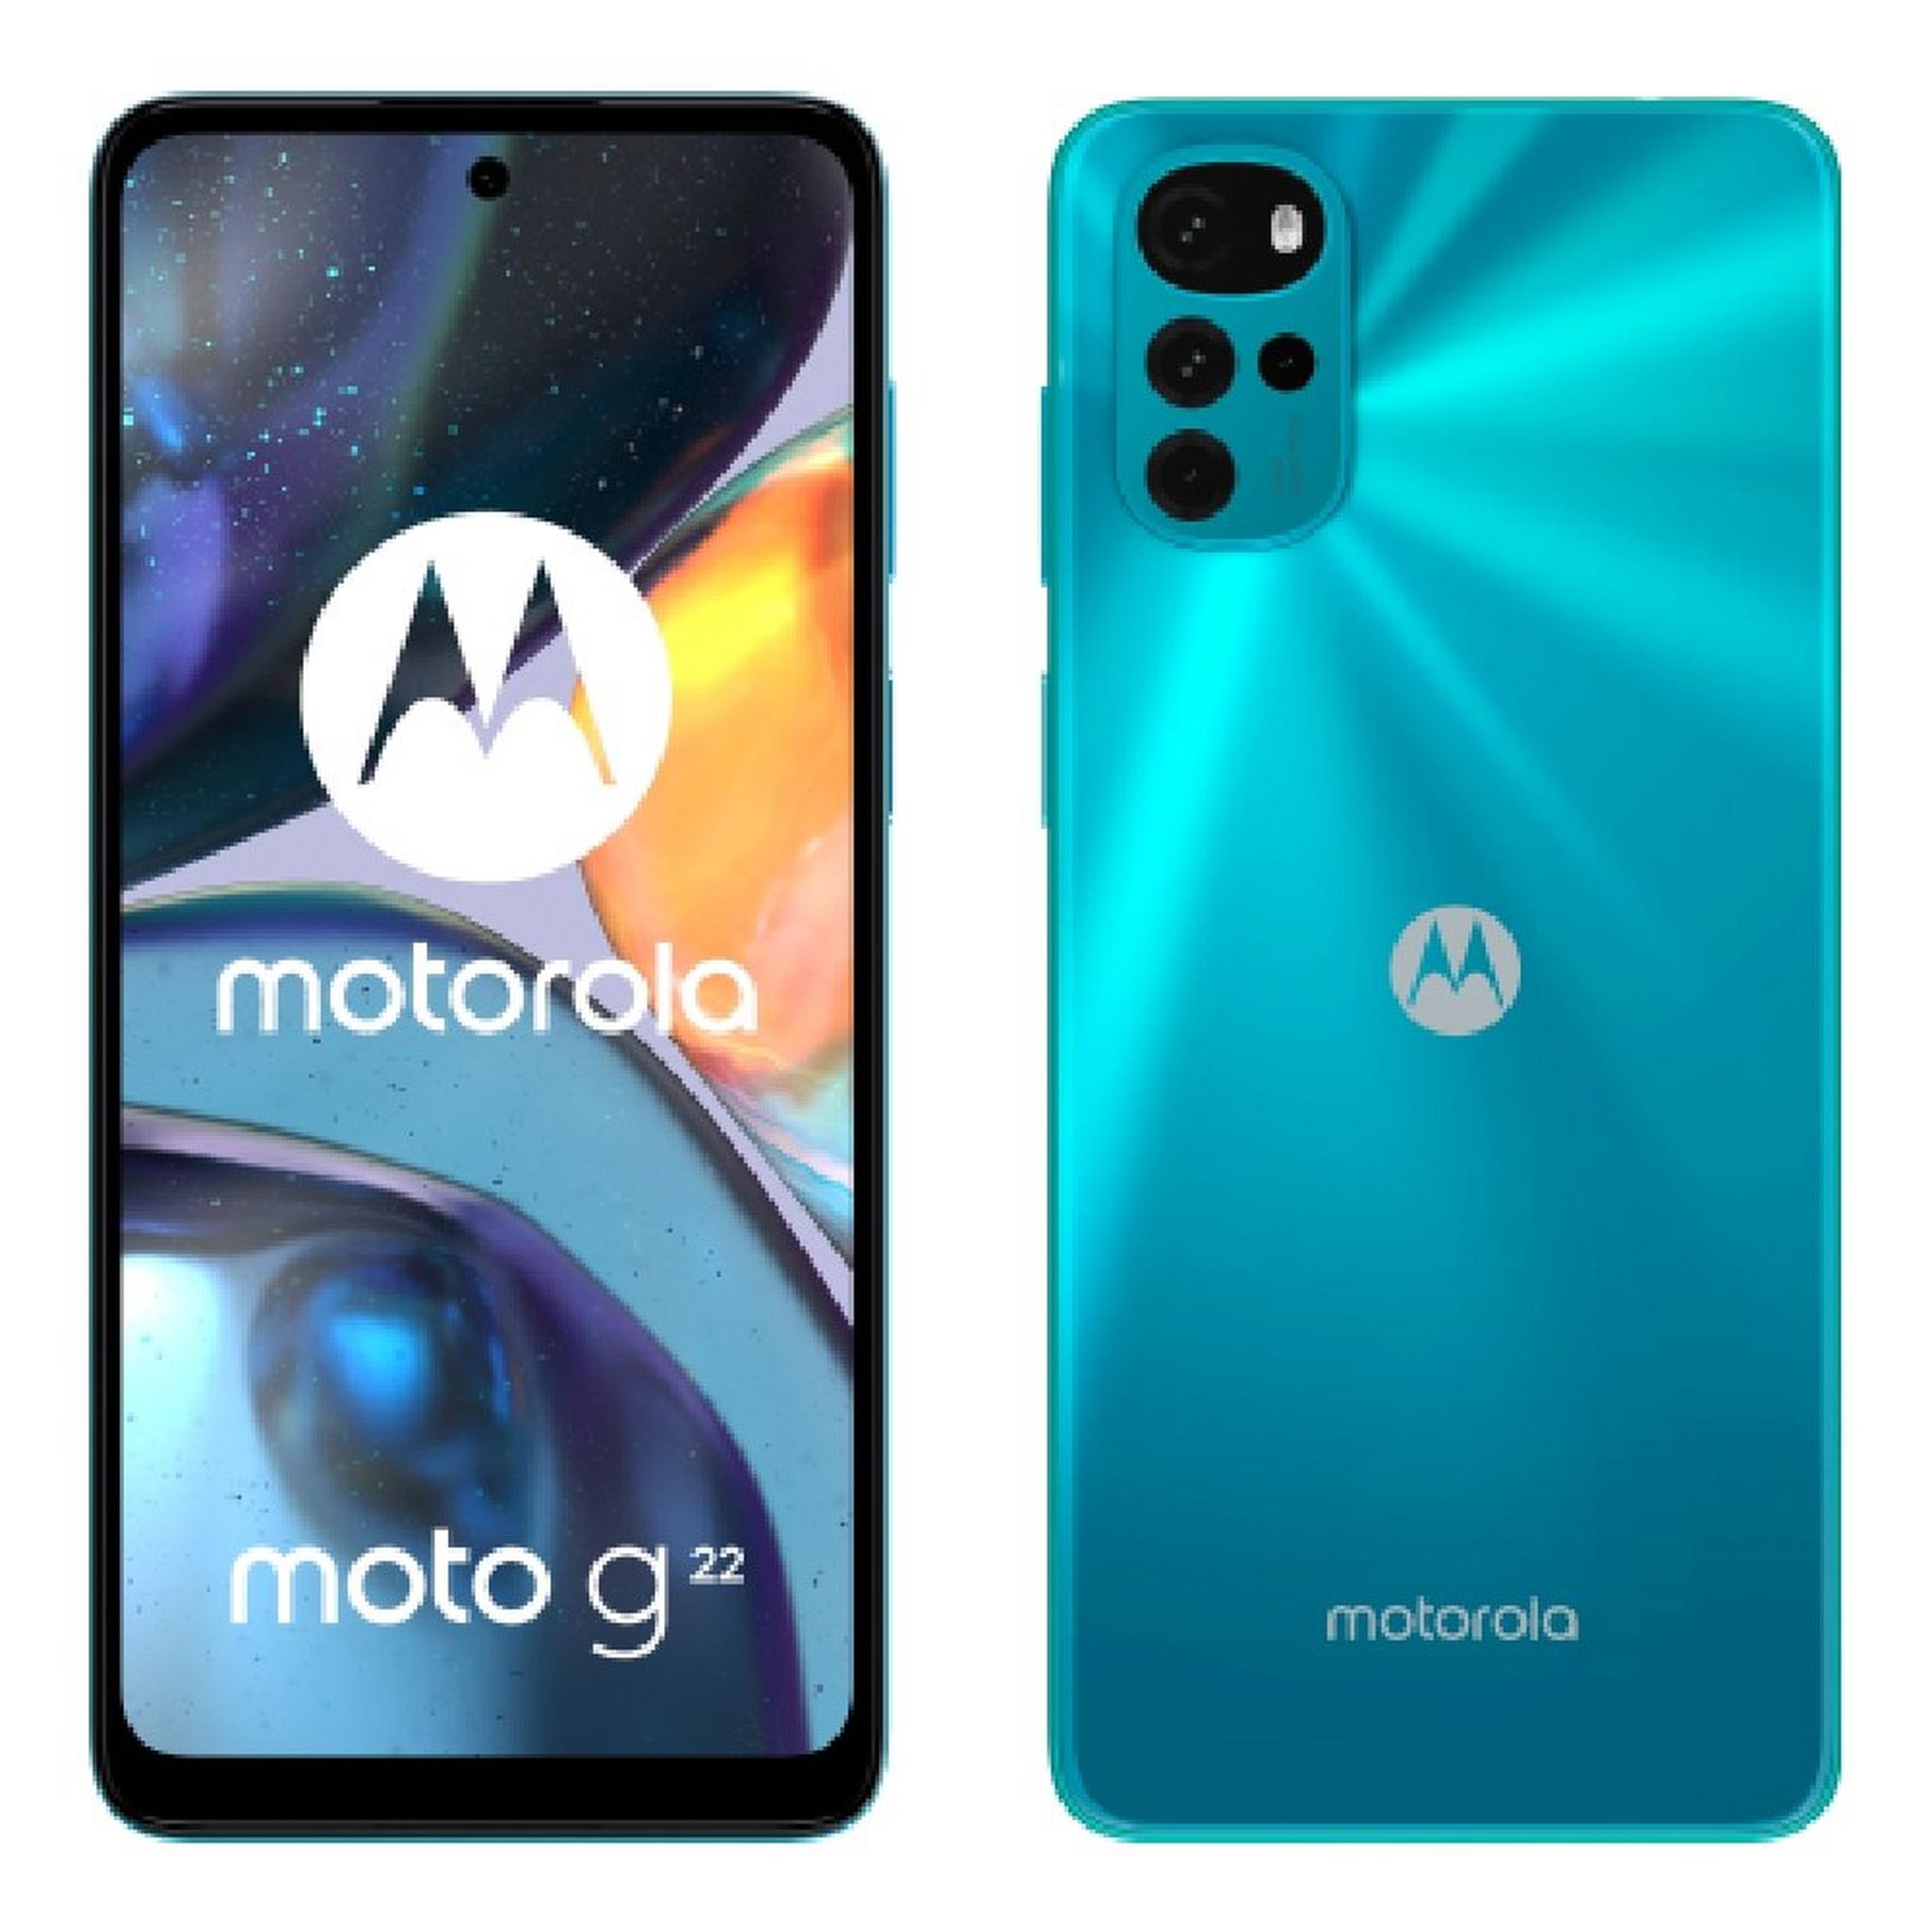 هاتف موتورولا موتو جي ٢٢ بسعة ١٢٨ جيجابايت - أزرق